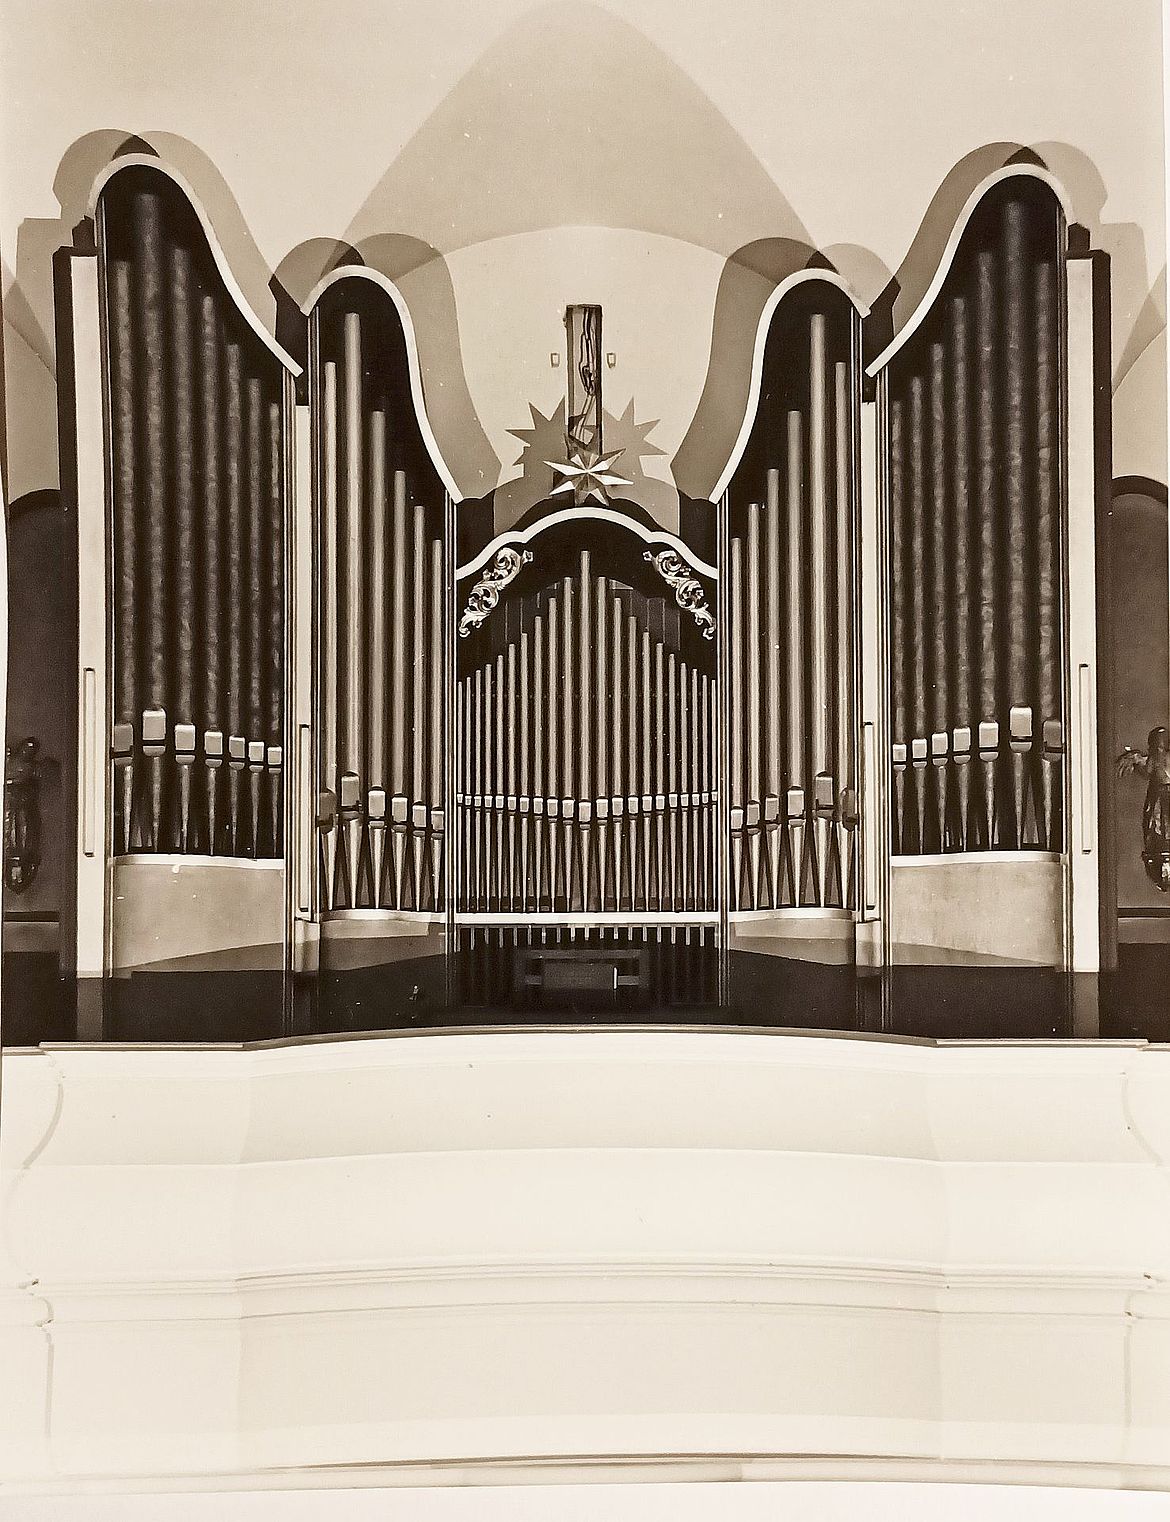 Orgel beim Einbau 1963 mit Engelfiguren, noch ohne Tabernakelaufsatz - Foto: Privatbesitz